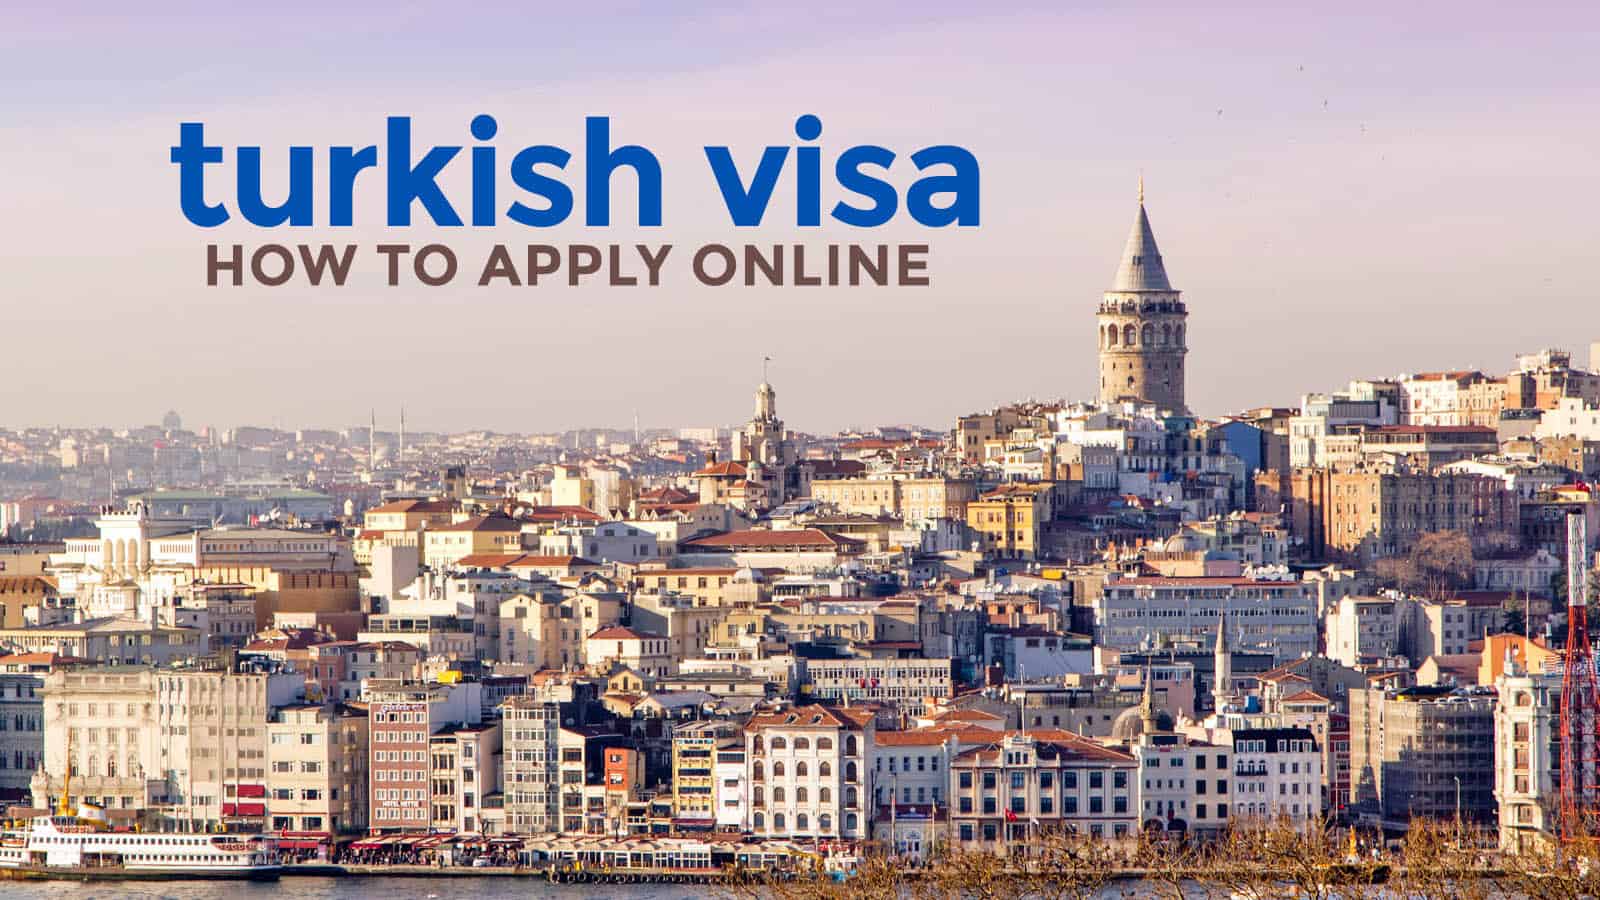 土耳其电子签证:要求+如何在线申请